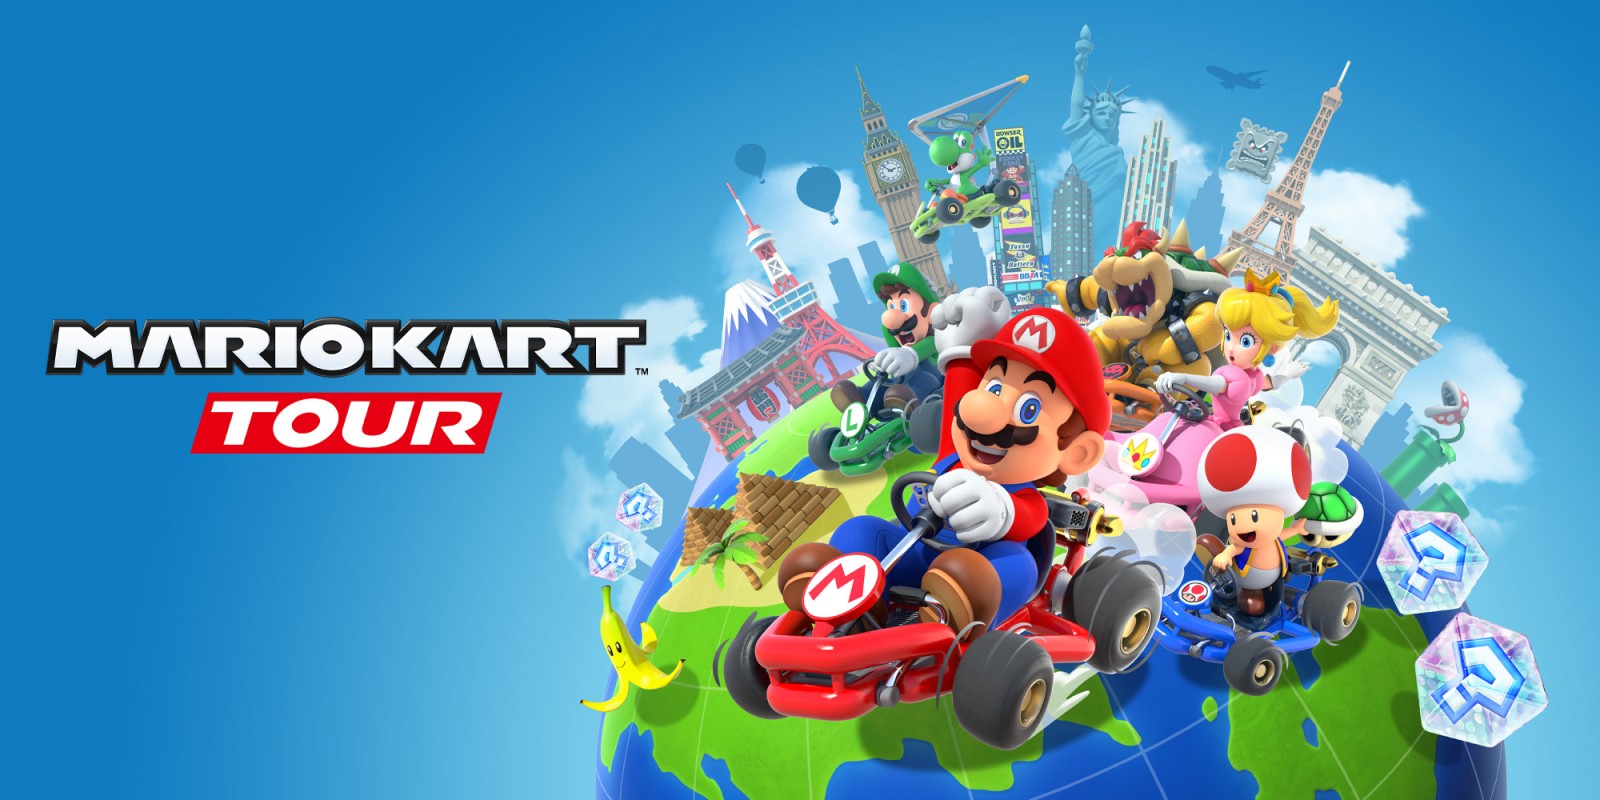 En su primer día de lanzamiento, Mario Kart Tour superó las 20 millones de descargas